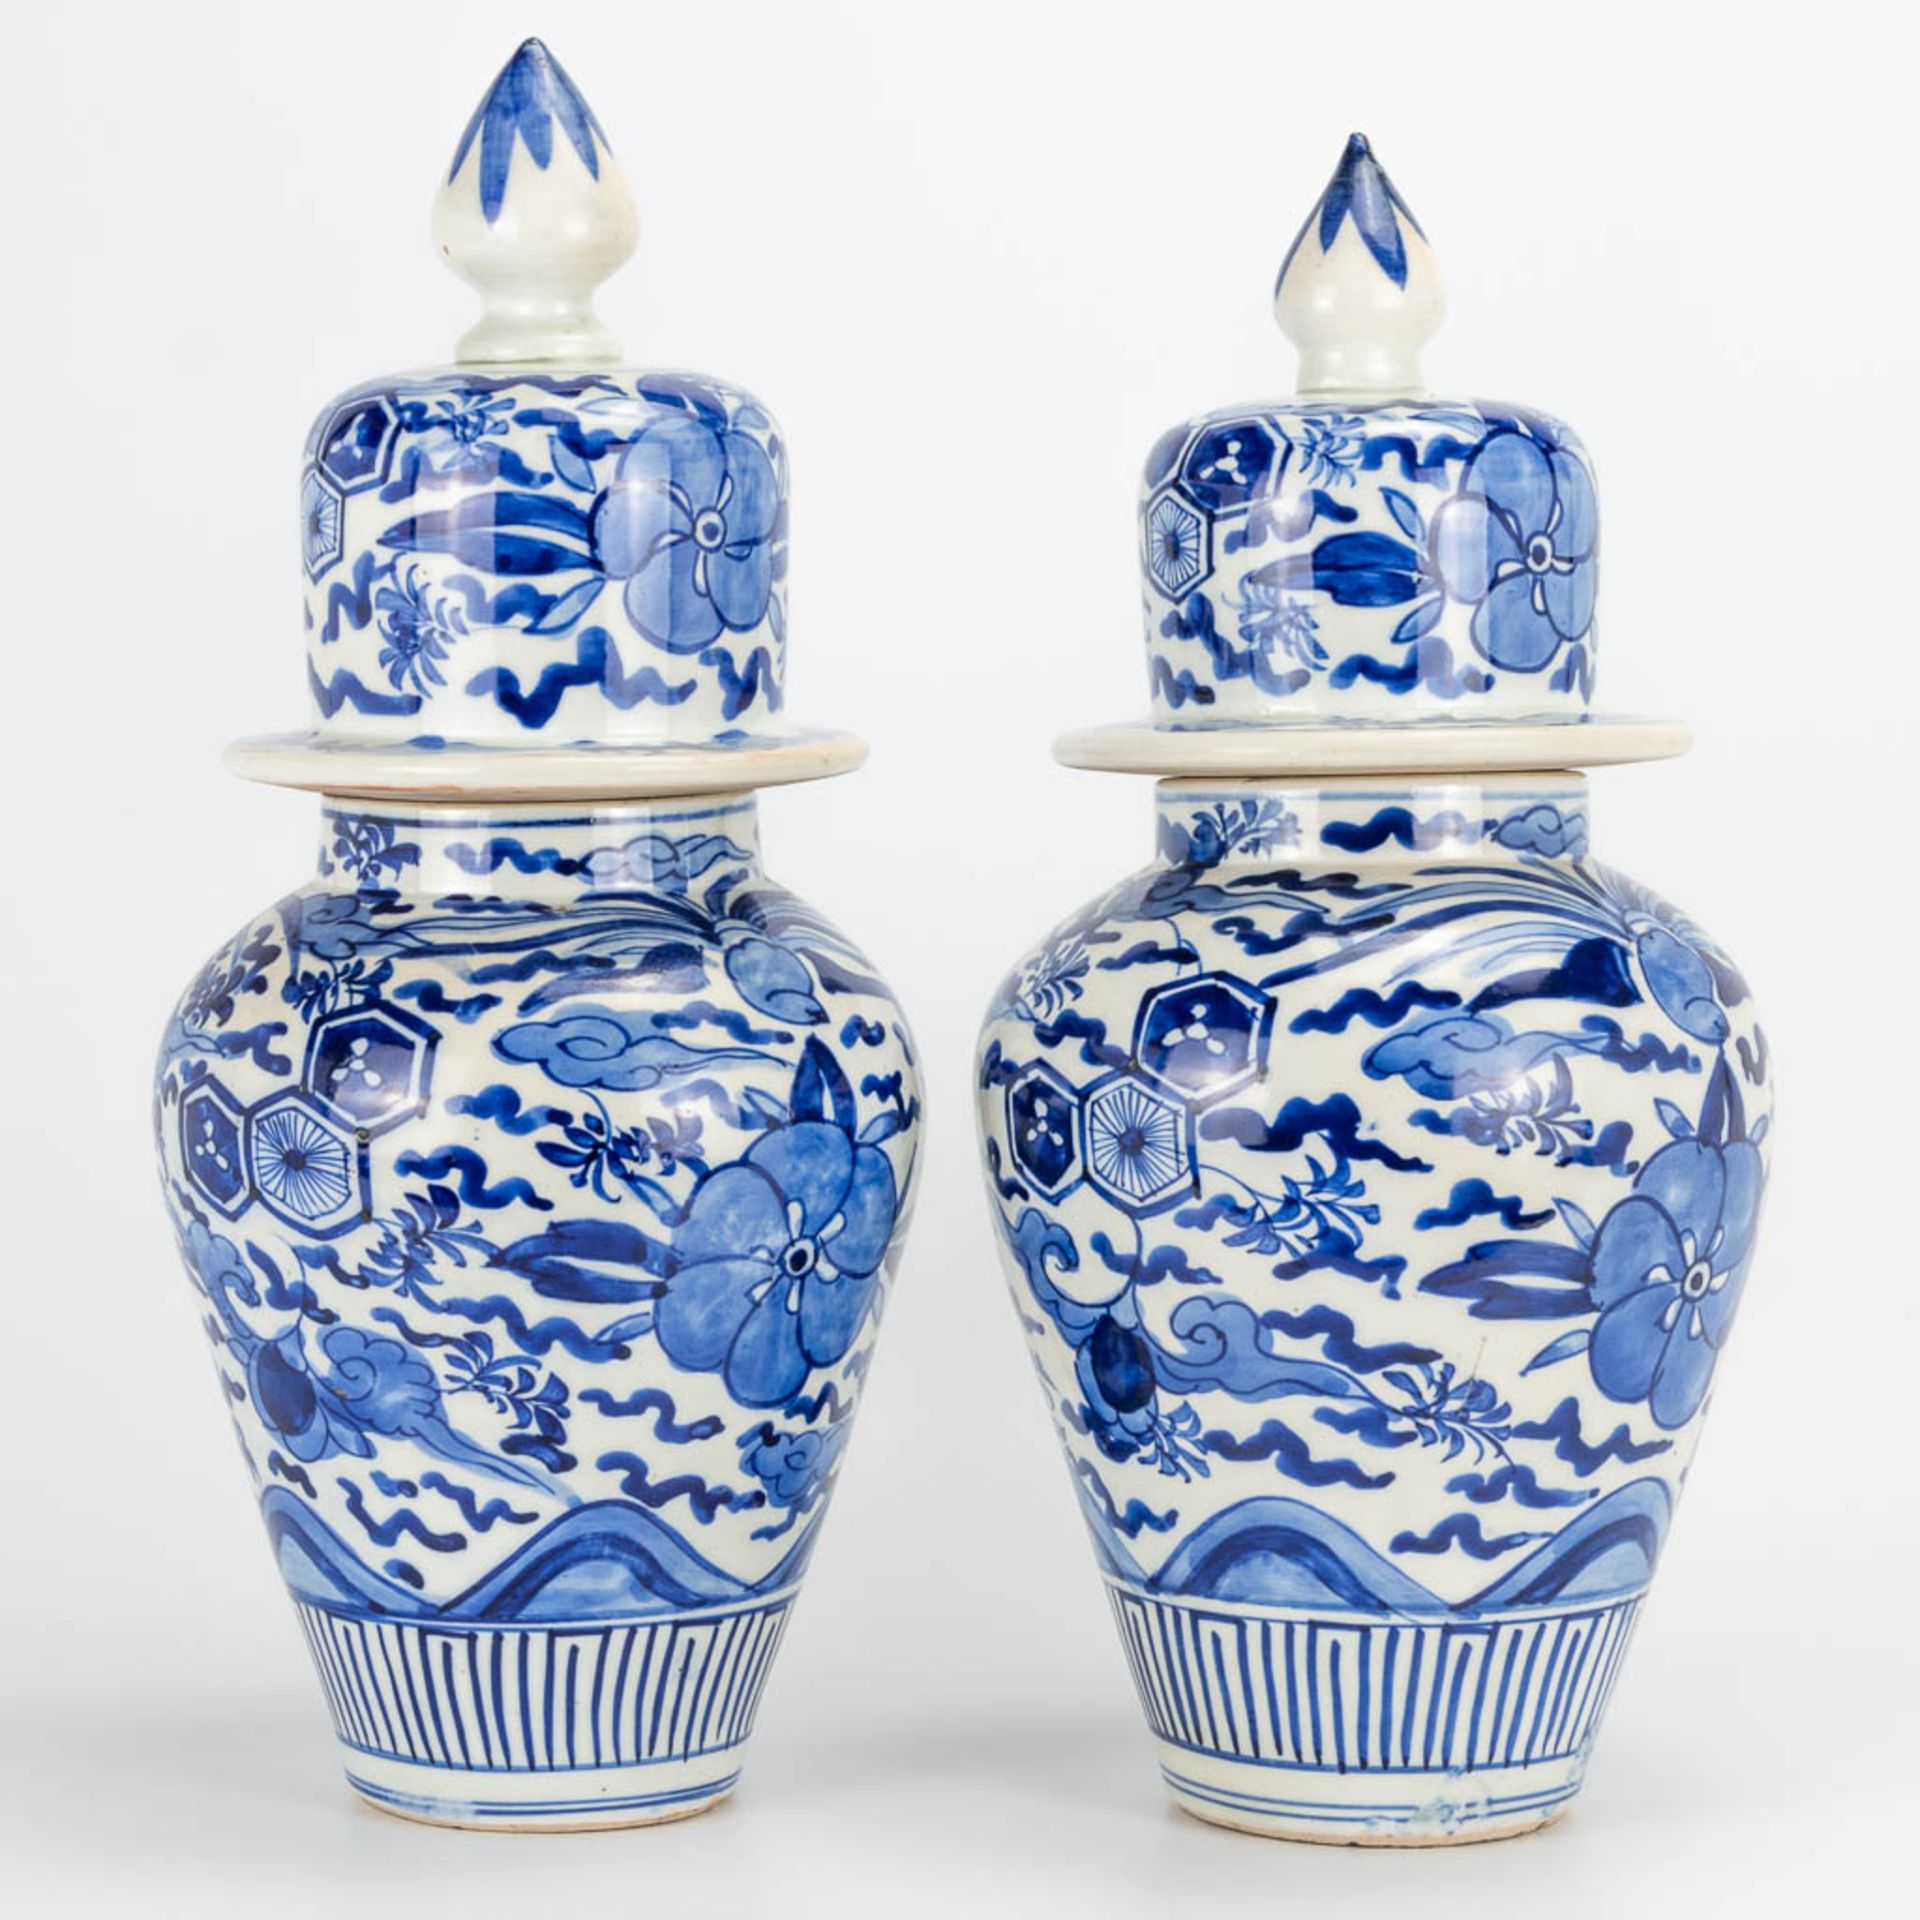 A pair of small Oriental vases wit lid, blue-white floral decor. (40 x 20 cm) - Bild 6 aus 20